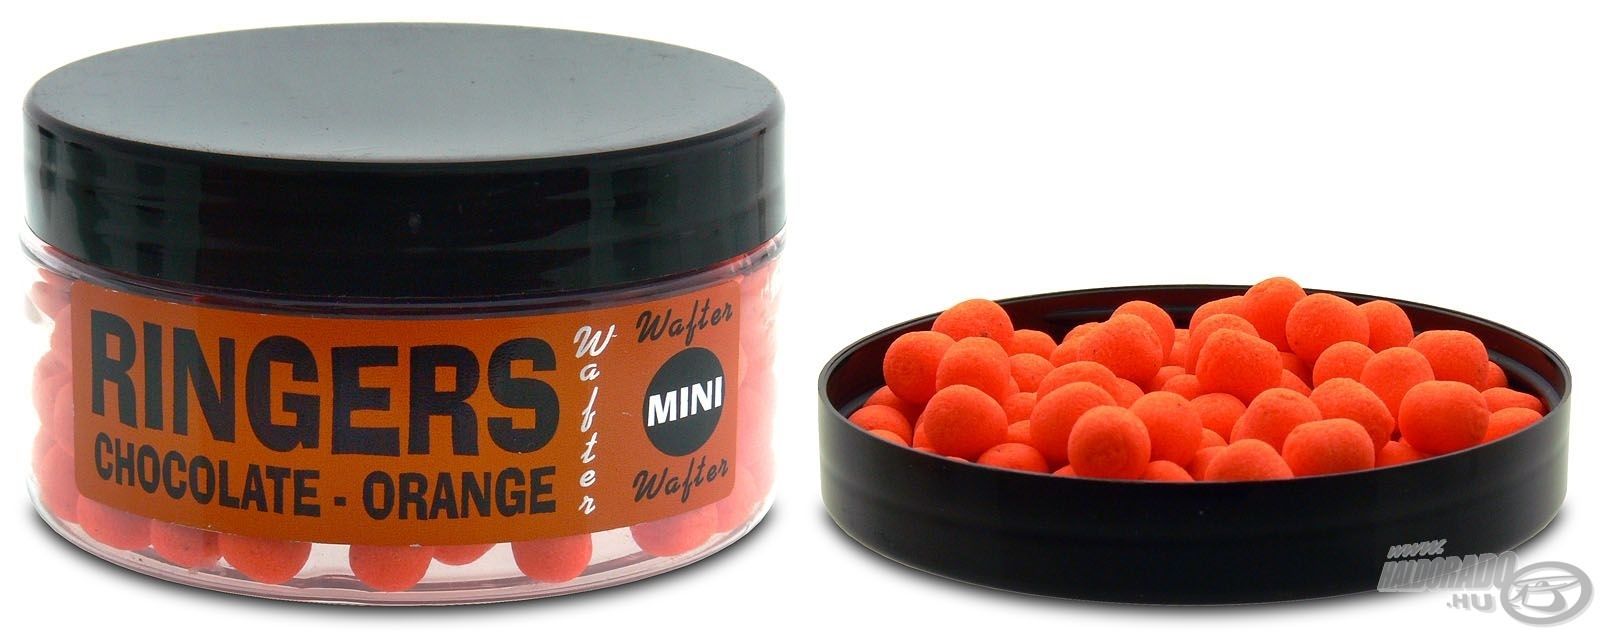 A Ringers termékek zászlóshajói a narancssárga színű, csoki-narancs ízesítésű csalik, így természetesen ez a változat a mini wafterek között is megjelenik